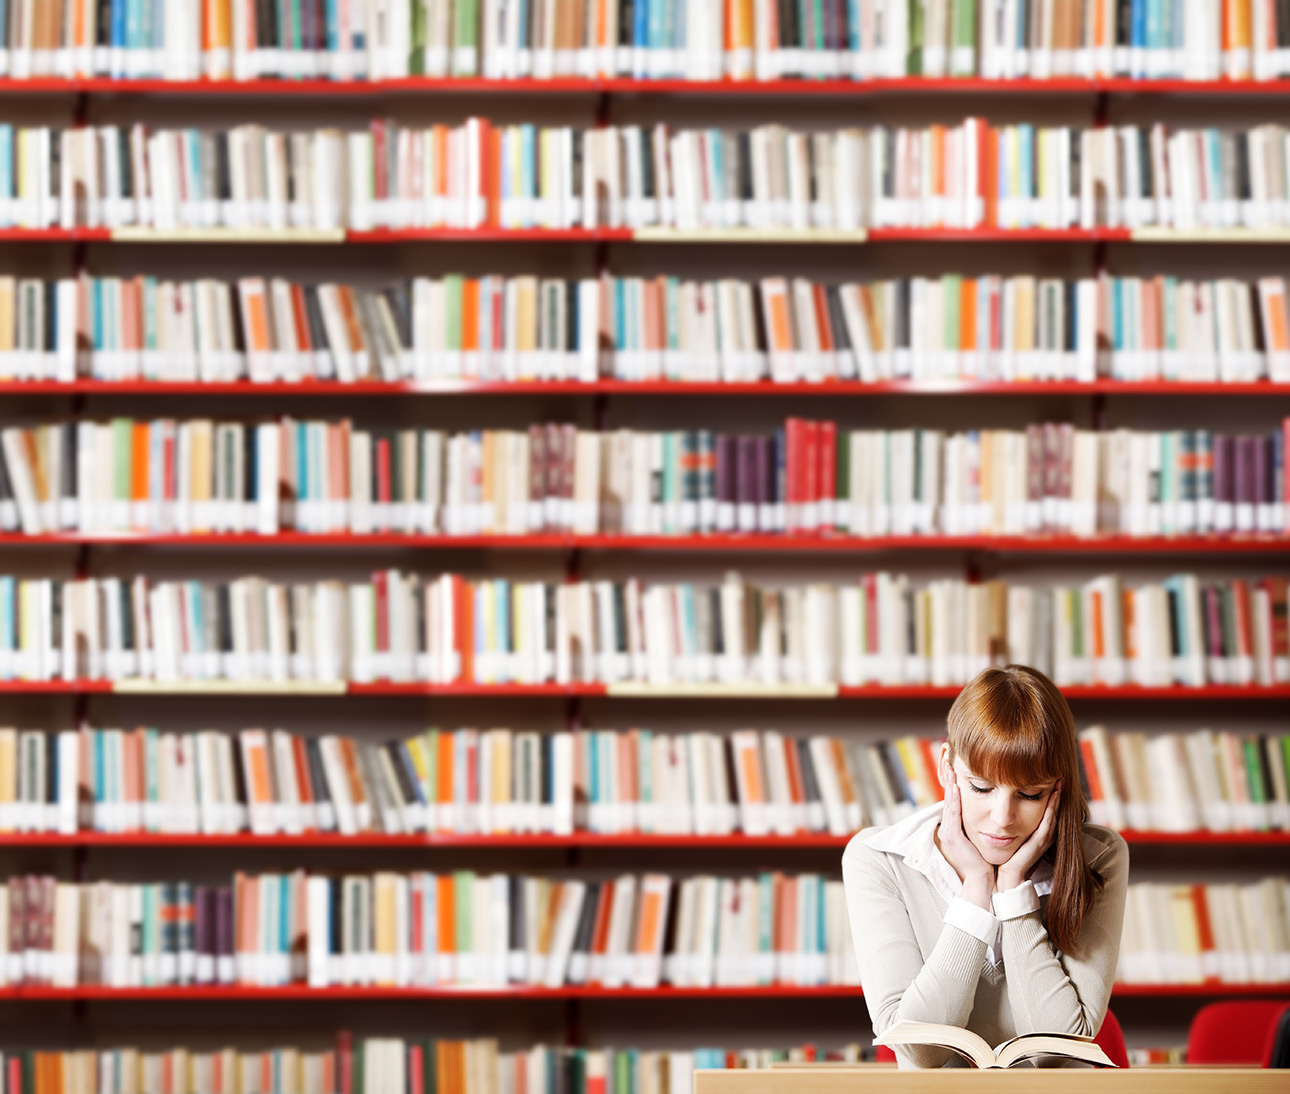 "Leer también es un arte", reflexiones de tres escritores sobre el oficio del lector